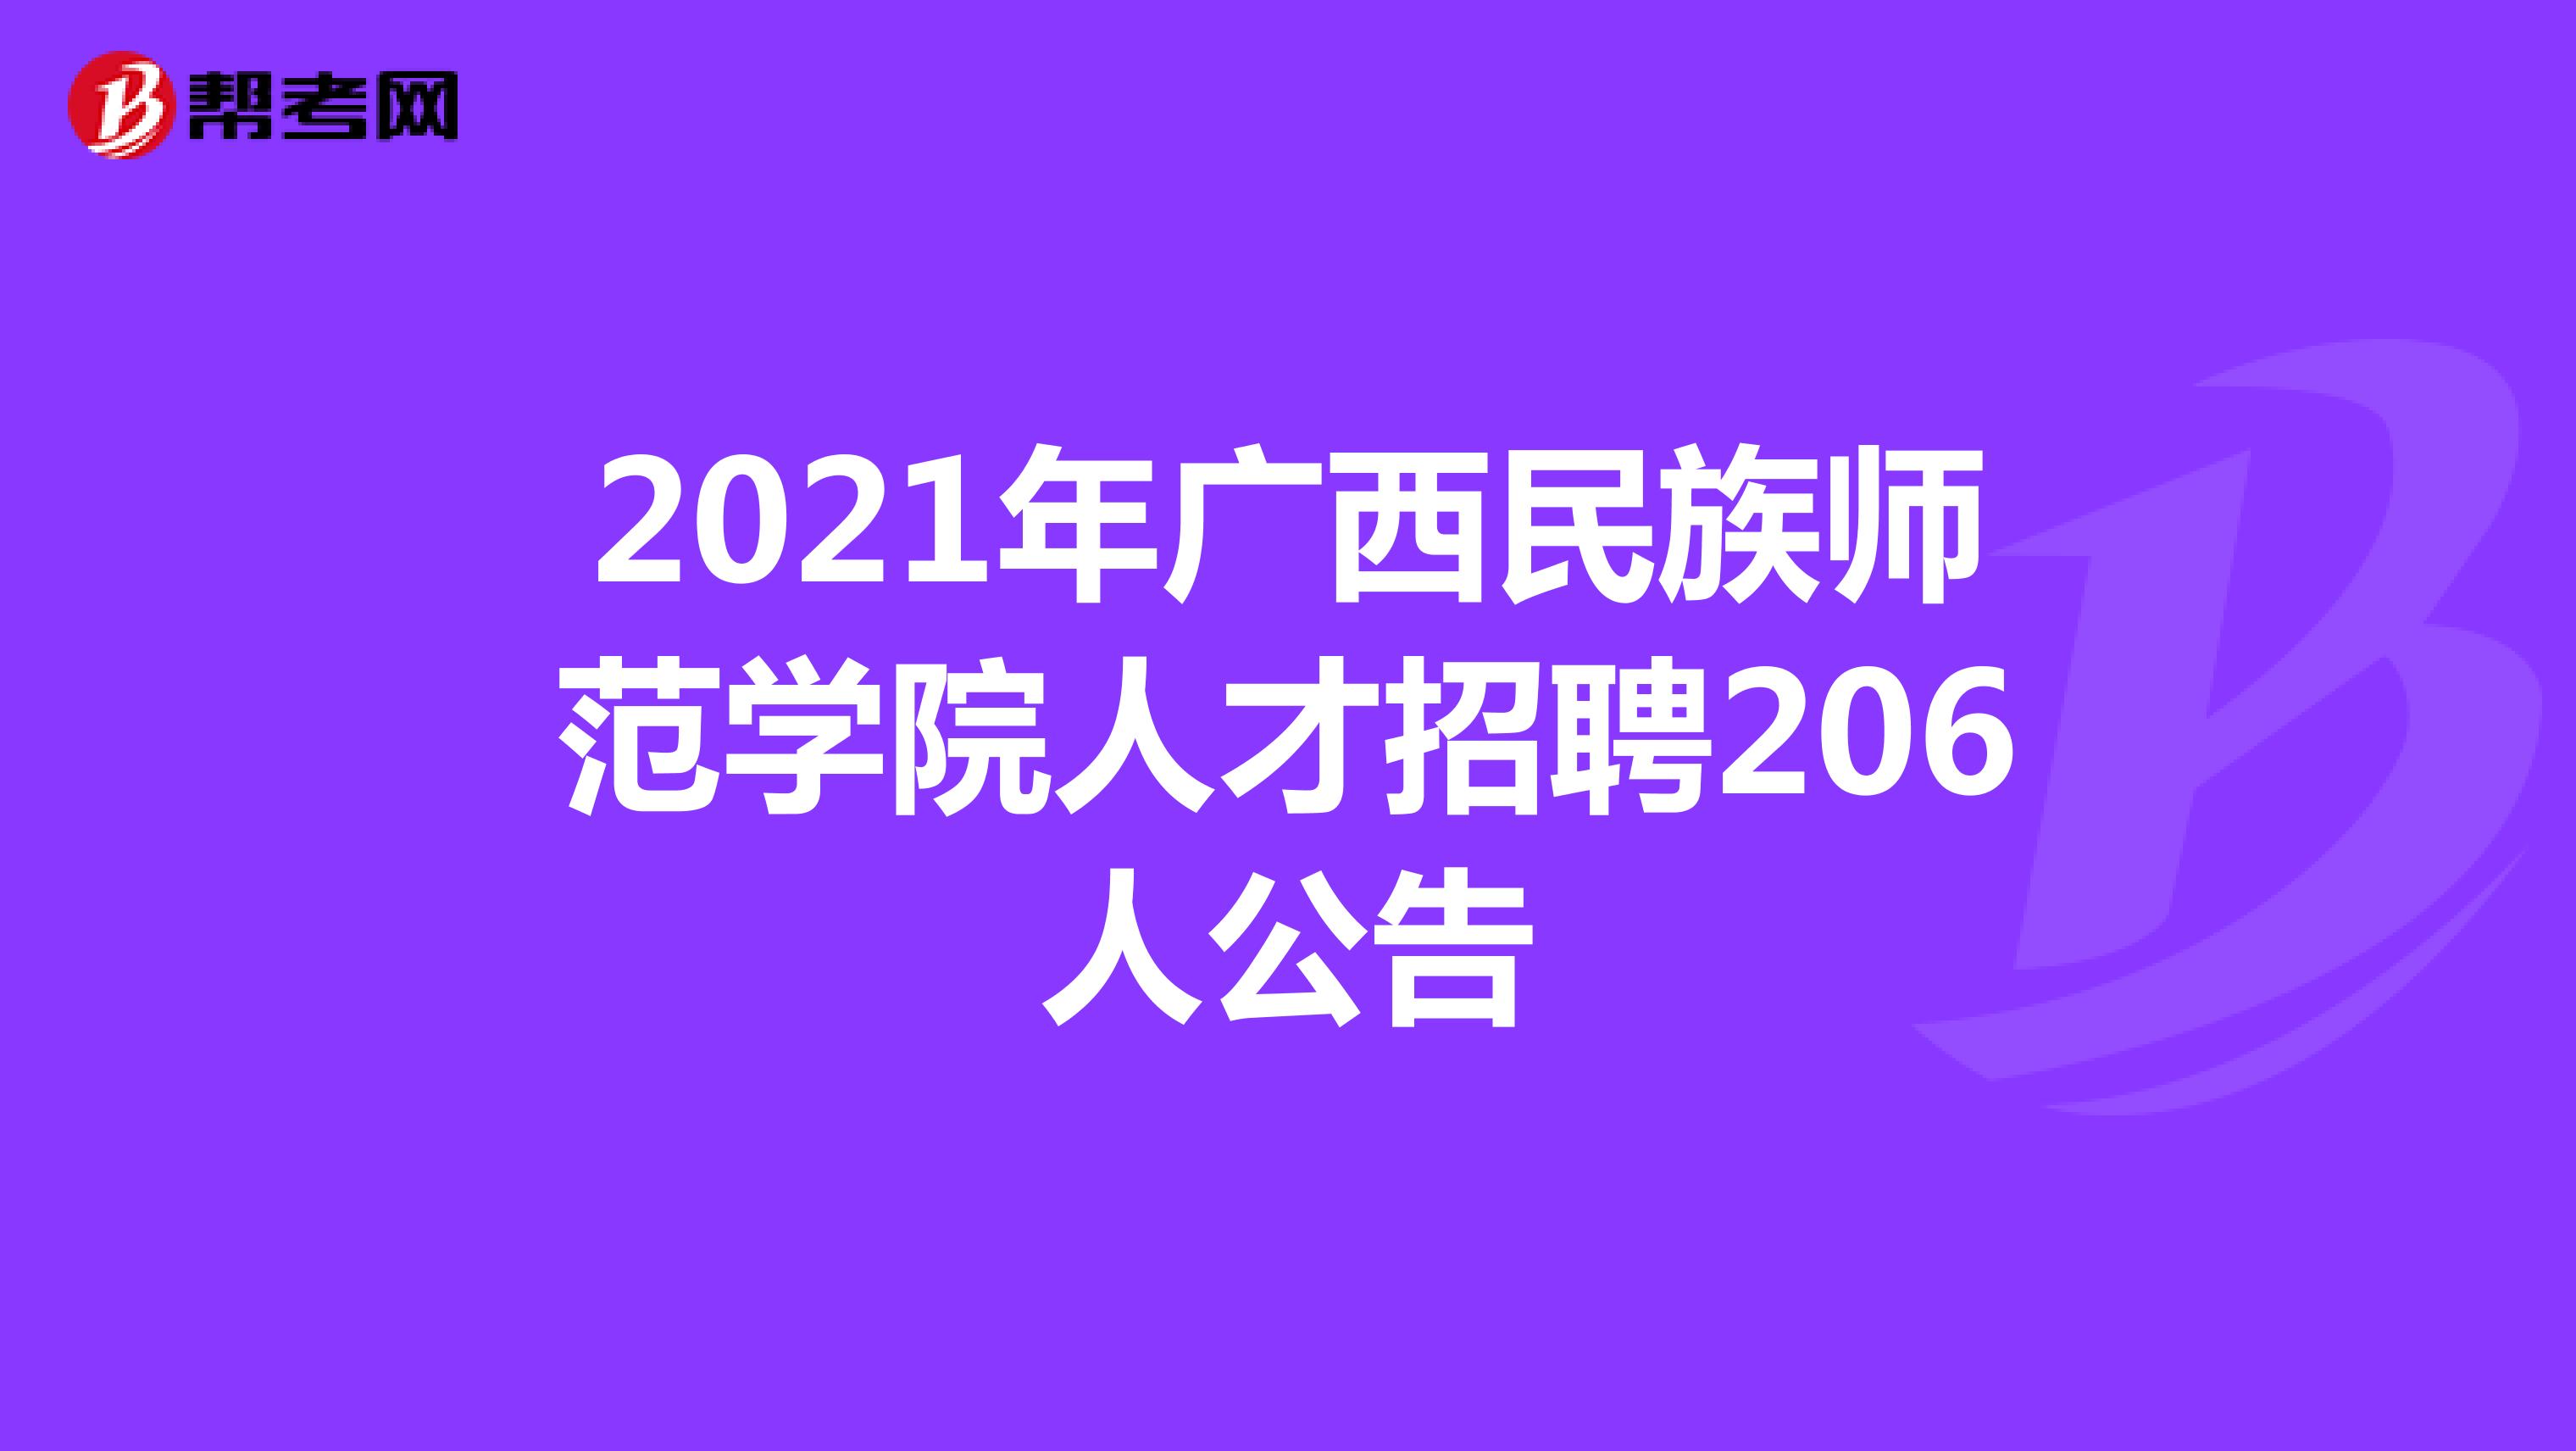 2021年广西民族师范学院人才招聘206人公告